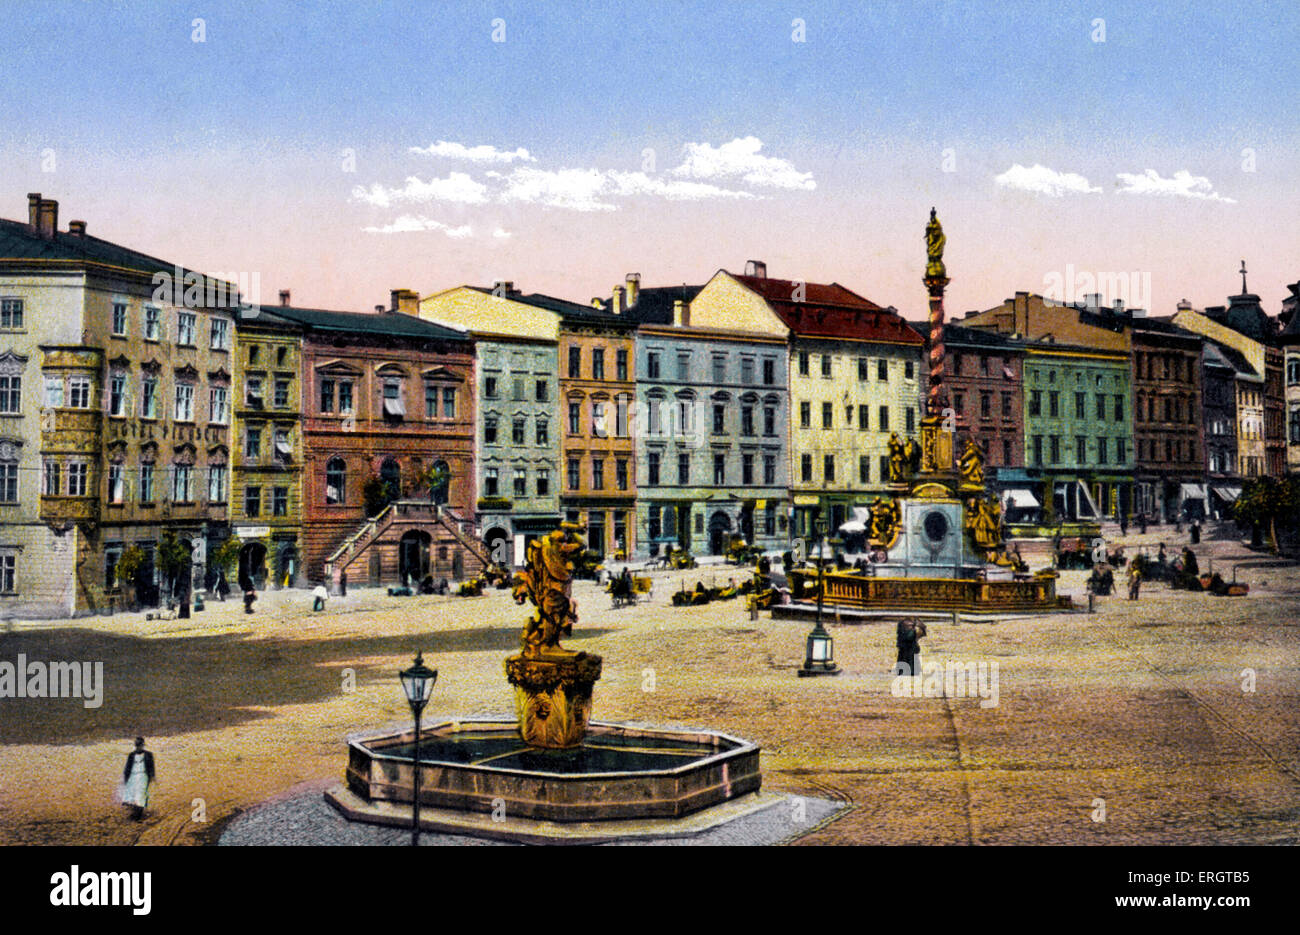 Olomouc / Olmutz - fotografia colorata di Dolni Square nella città ceca. È stato il primo teatro comunale dove Gustav Foto Stock